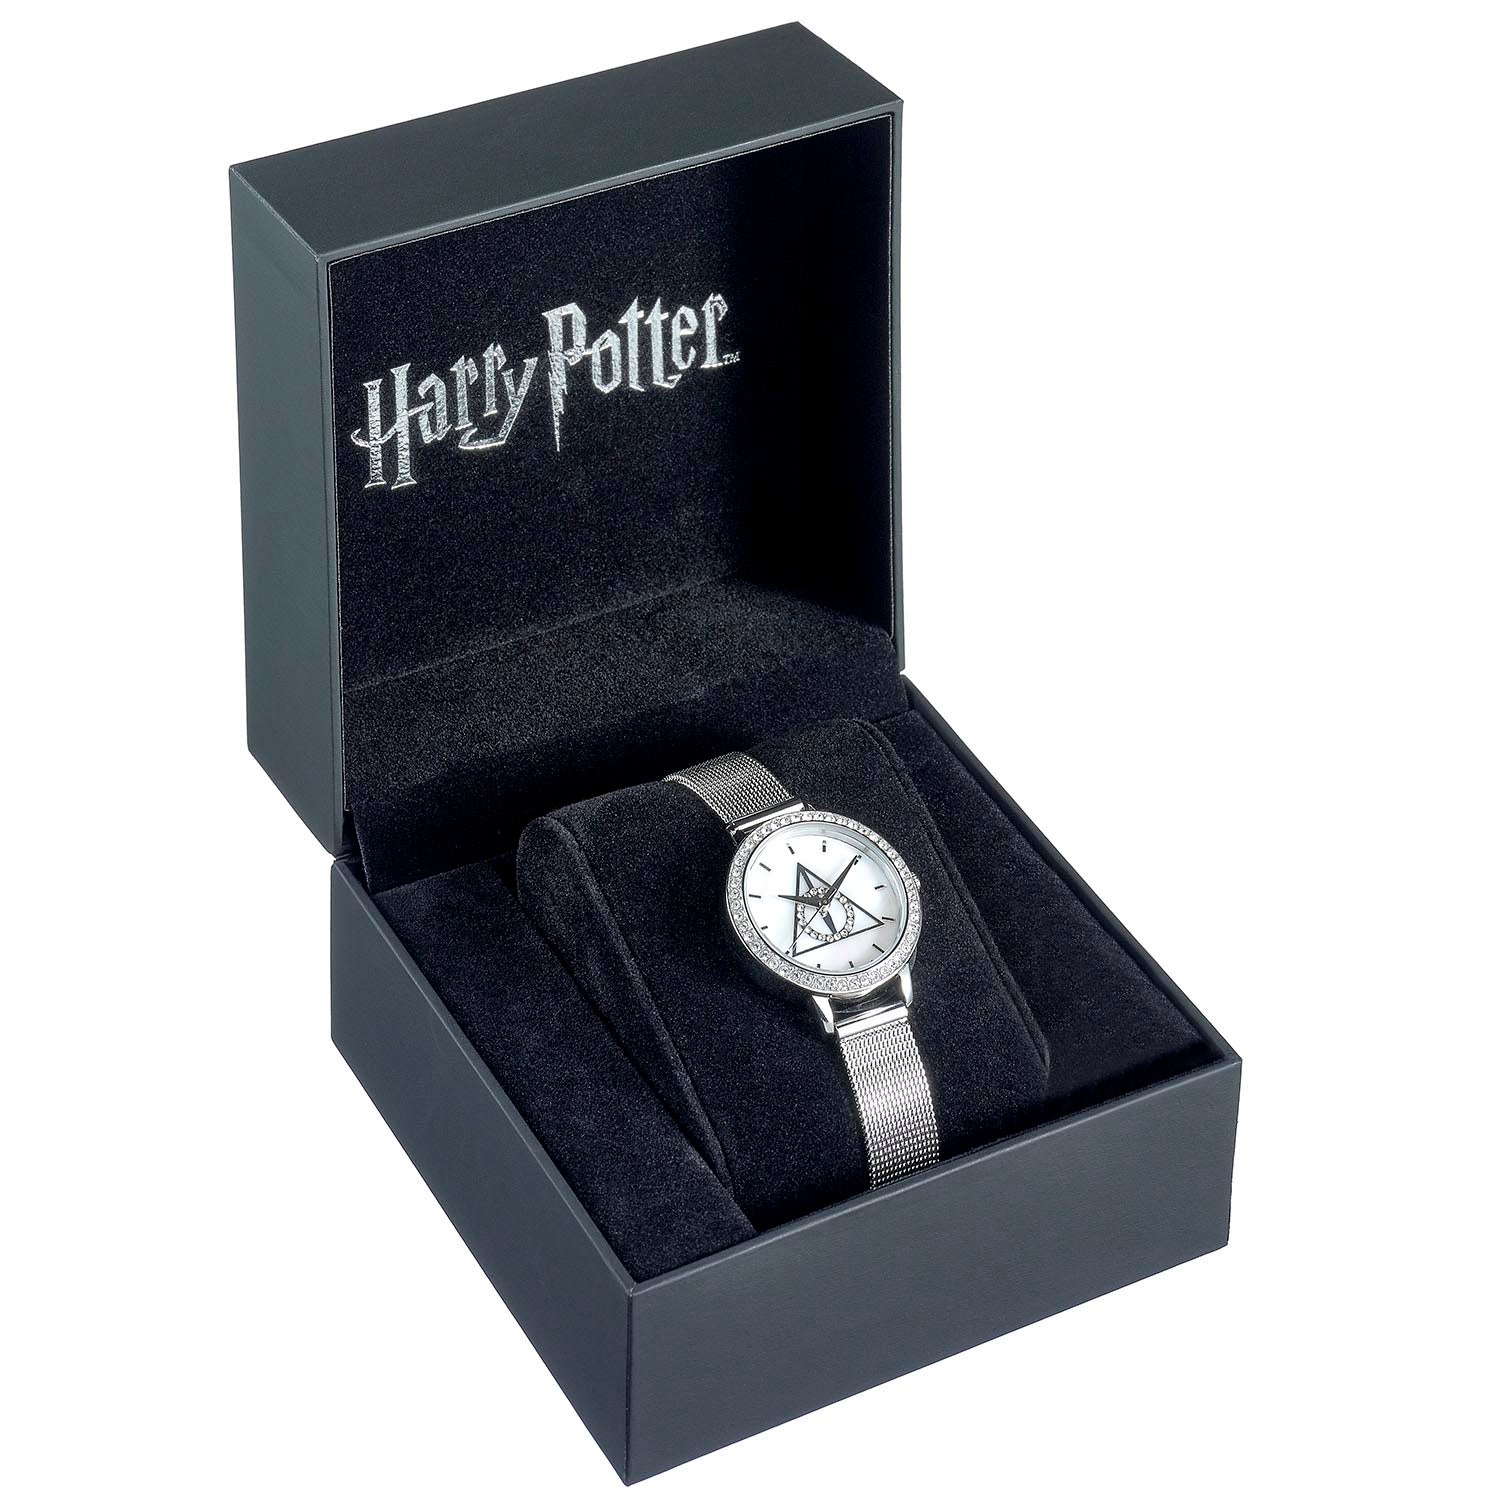 Montre en argent Harry Potter Deathly Hallows ornée de cristaux Swarovski - Produit sous licence officielle - Livraison gratuite avec suivi au Royaume-Uni !